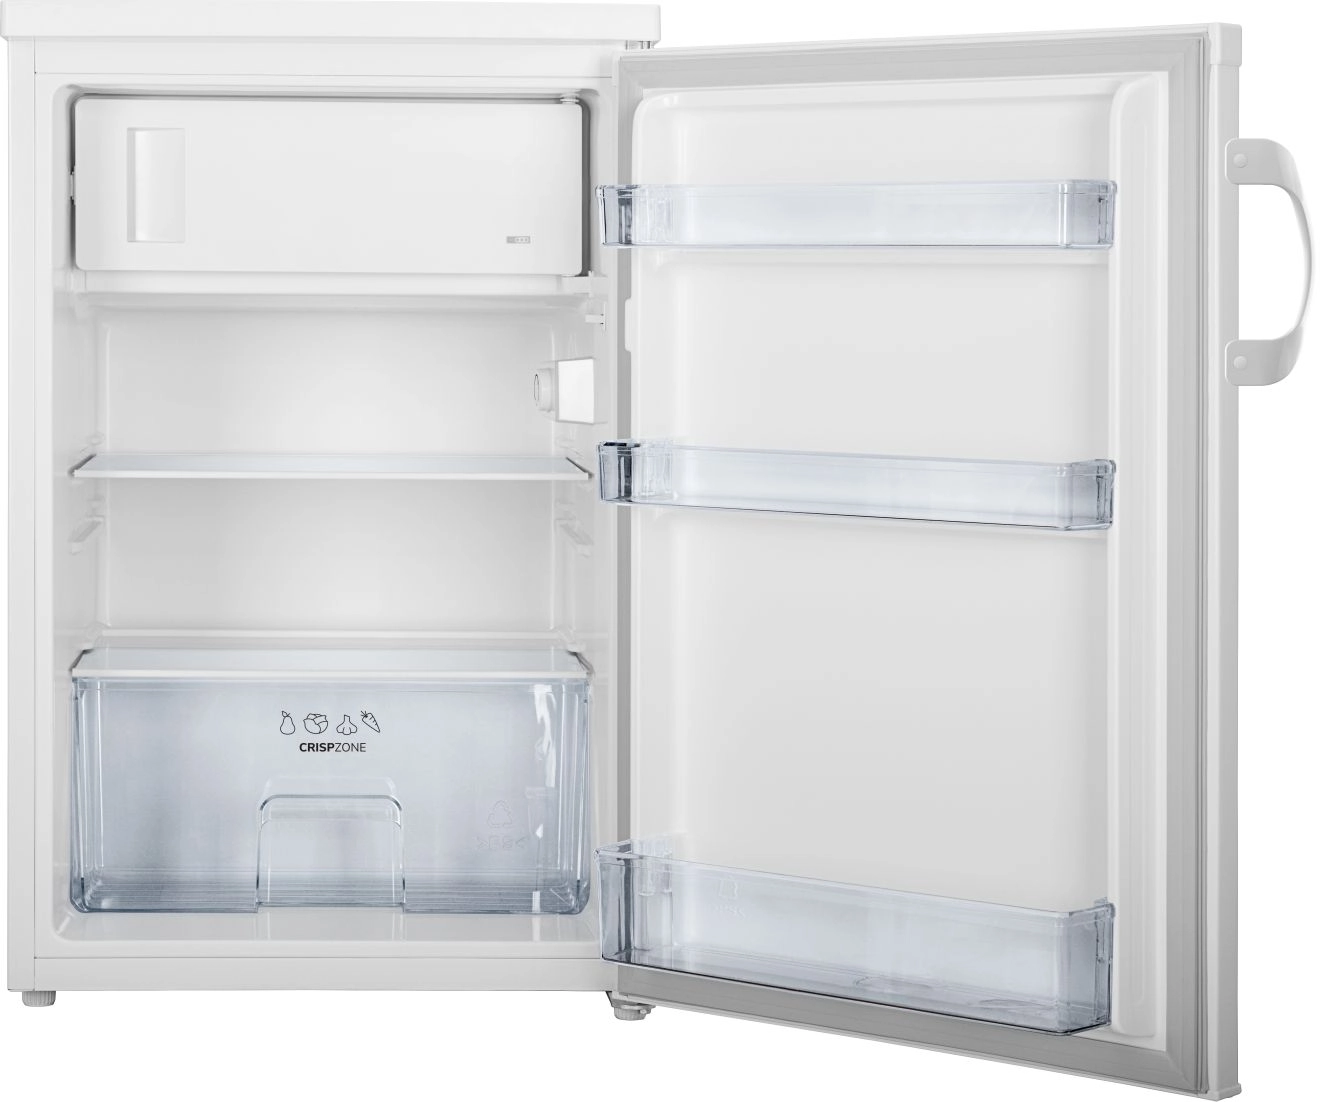 Холодильник GORENJE RB491PW